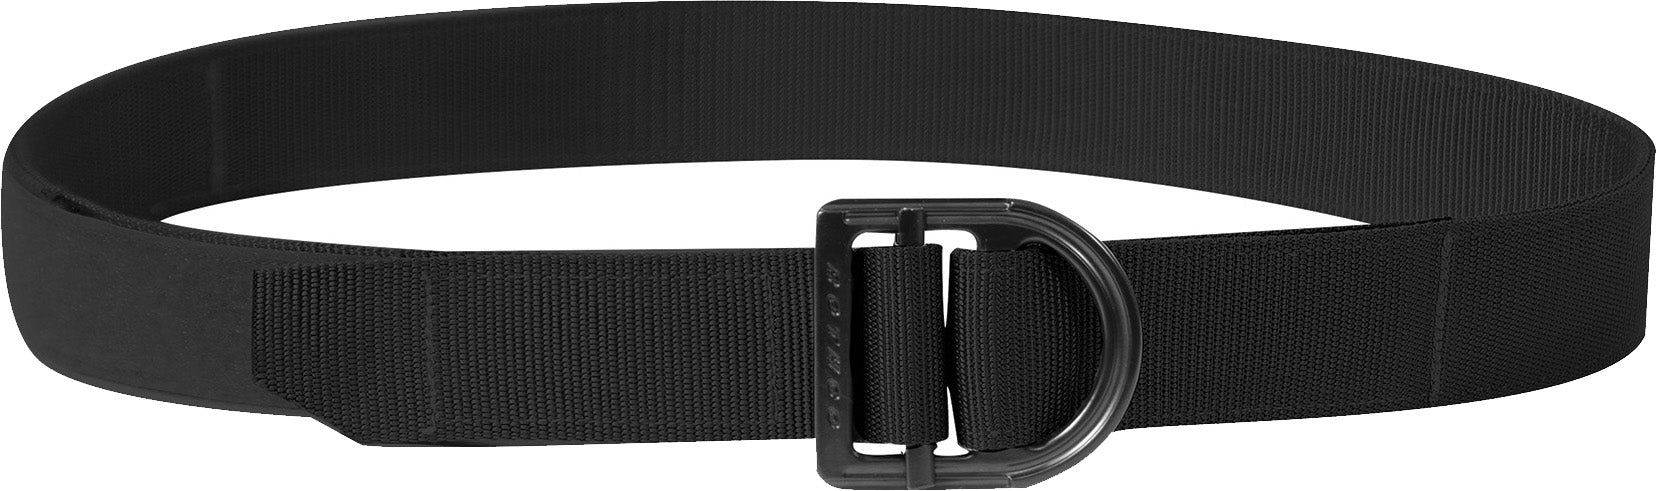 Heavy Duty Range Belt Two Layer Webbing Military Belt with Hook & Loop Buckle